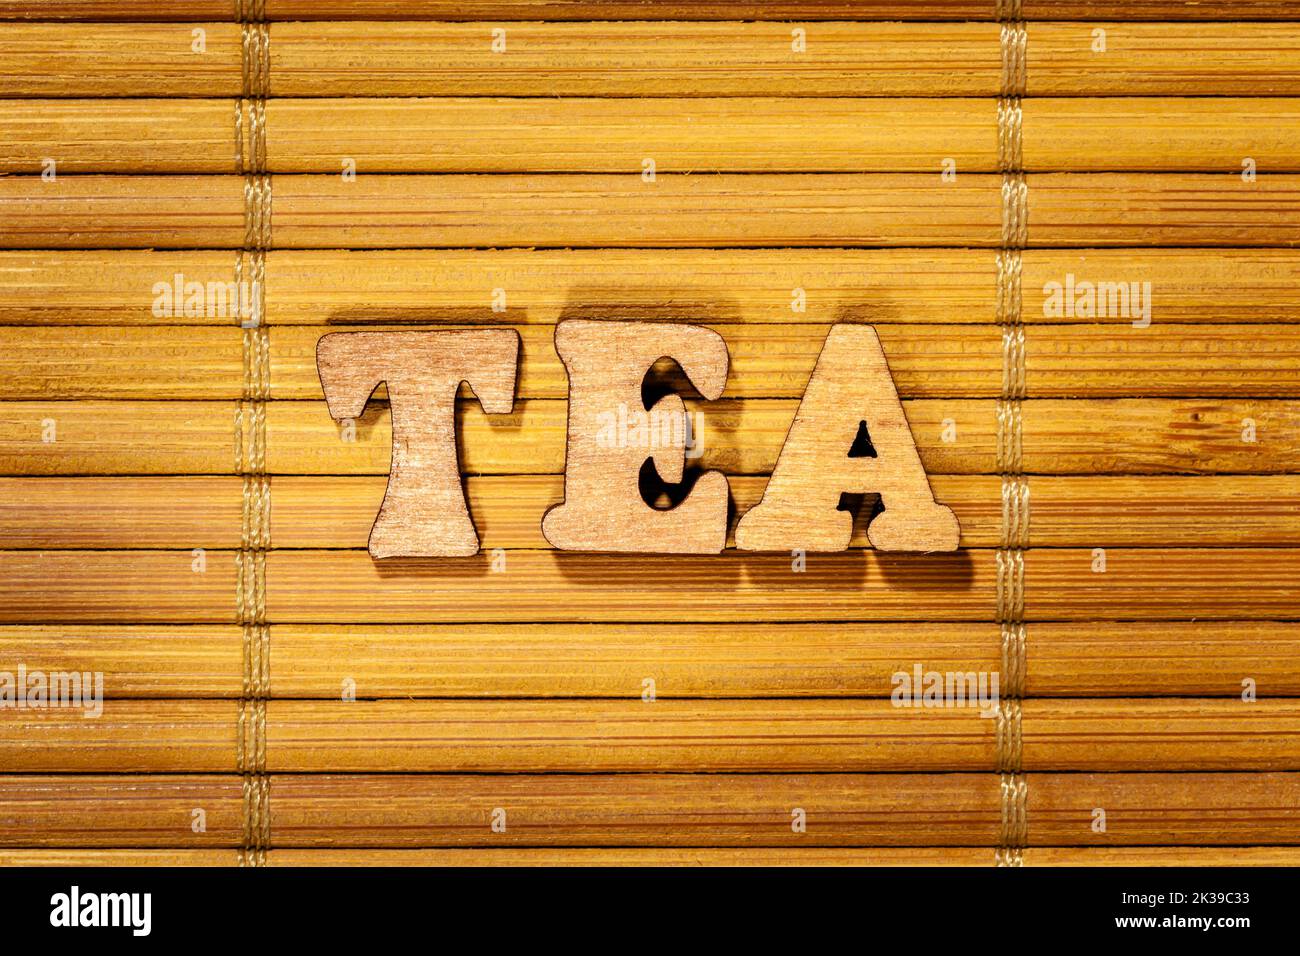 Palabra del té - Inscripción con letras de madera sobre la estera de bambú Foto de stock